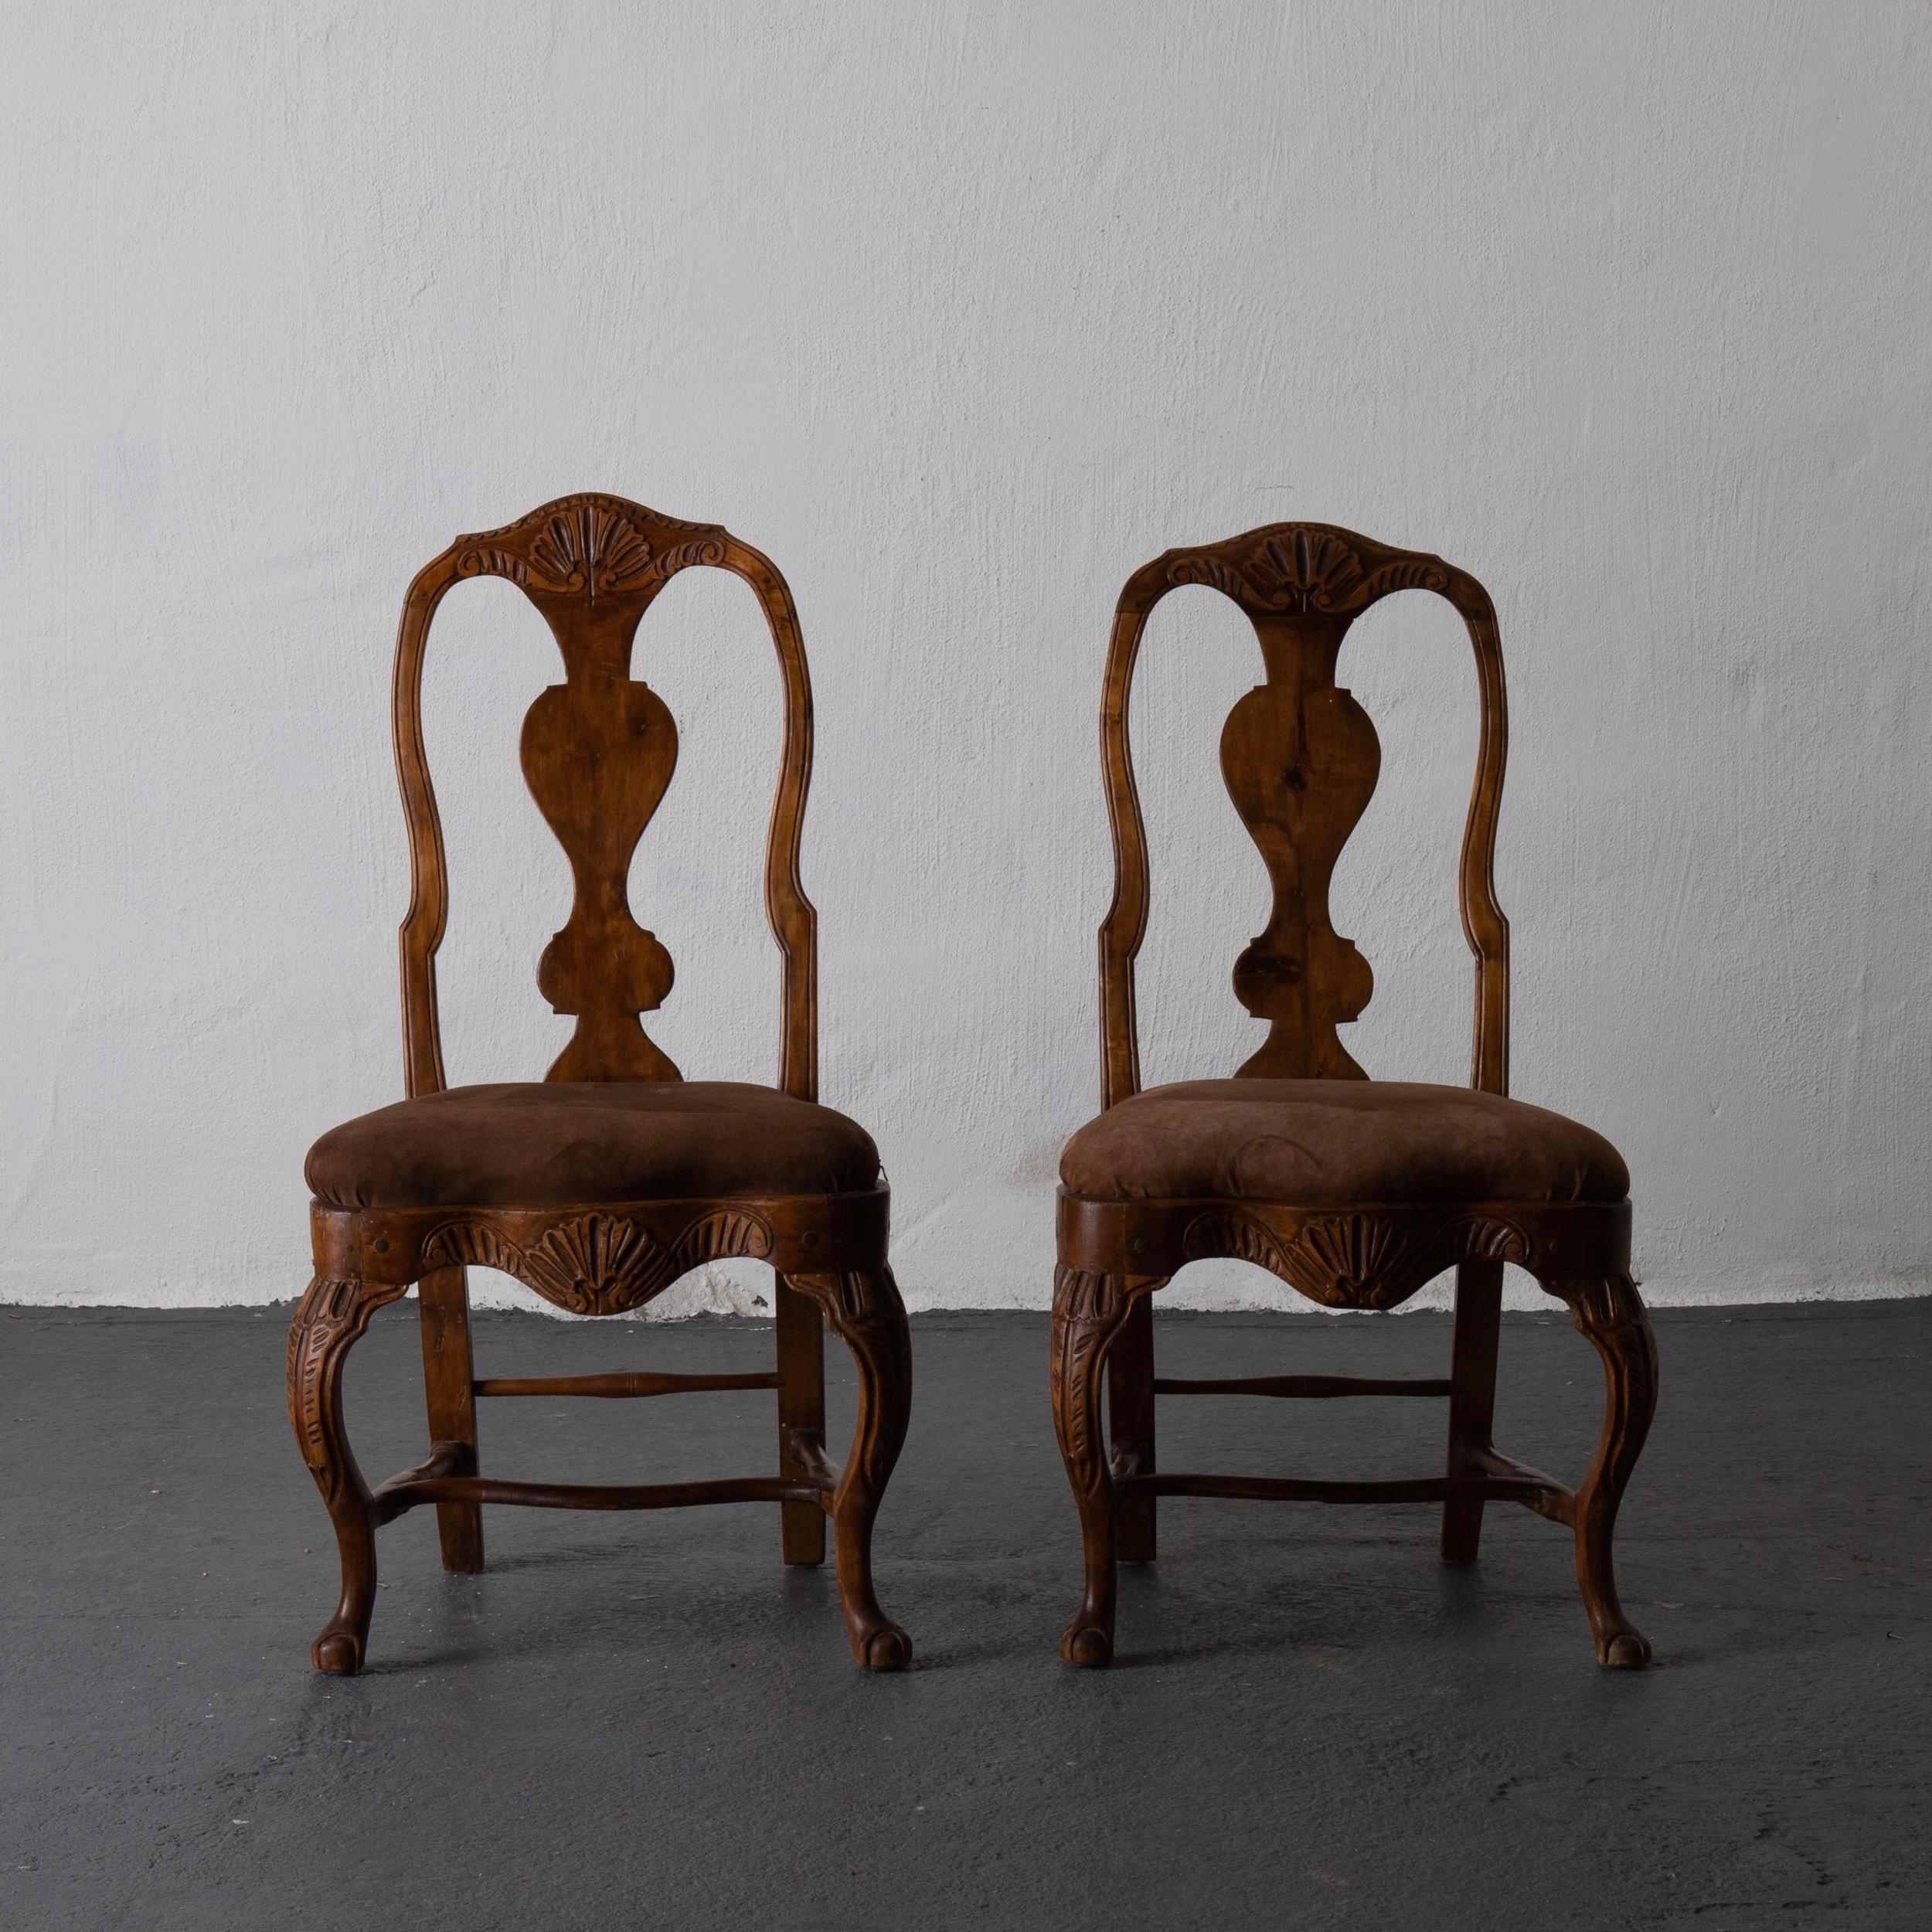 Ein Paar schöne schwedische Rokoko Beistellstühle aus dem westlichen Teil von Schweden. Er stammt aus der Zeit des Rokoko und ist mit schokoladenbraunem Wildleder gepolstert. 

  